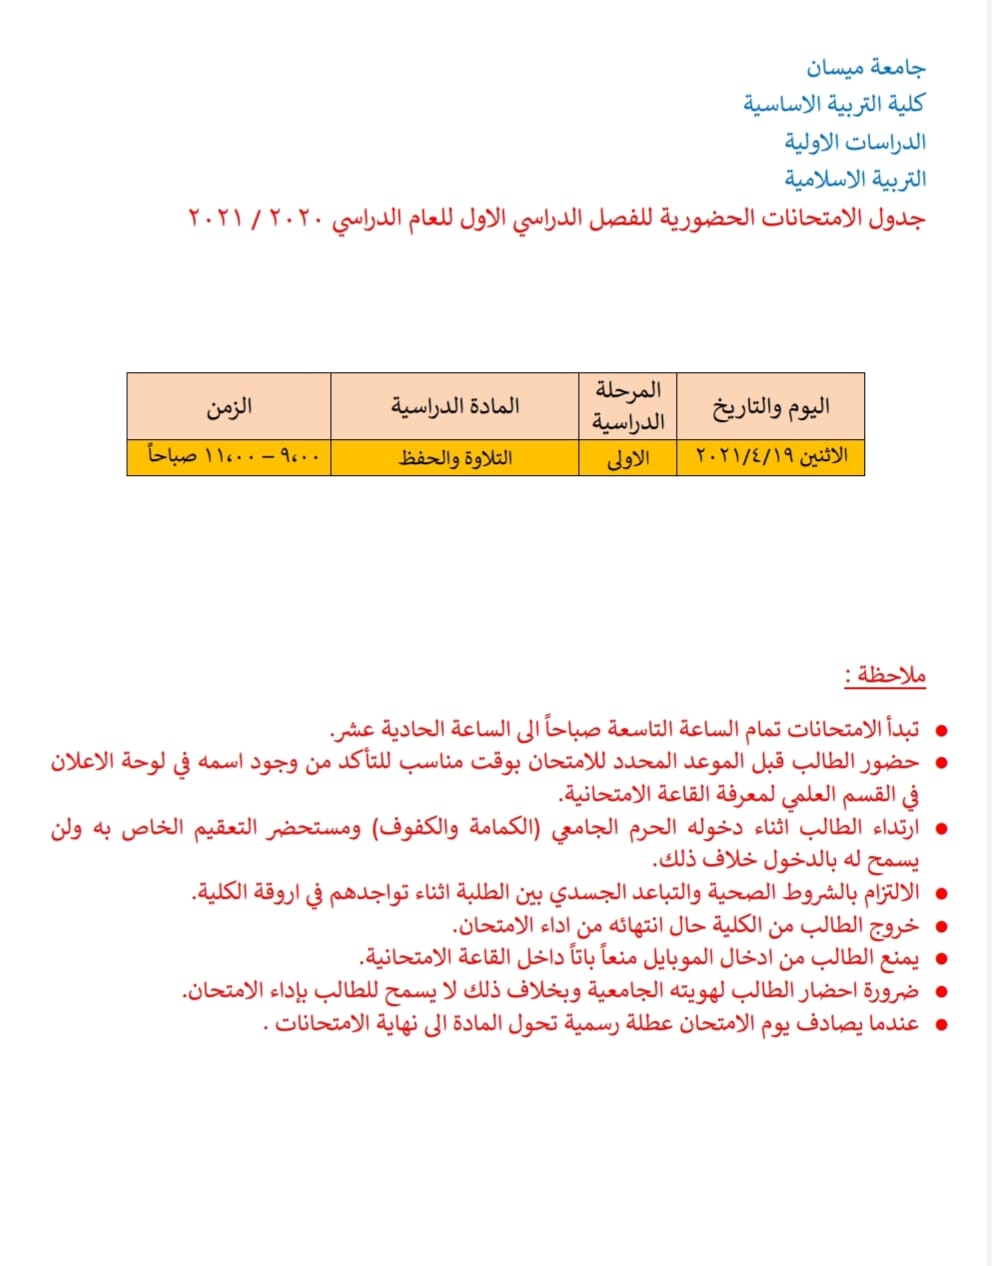 جدول الأمتحانات الحضورية لطلبة قسم التربية الأسلامية في كلية التربية الأساسية للفصل الدراسي الأول للعام الدراسي 2020 – 2021 .